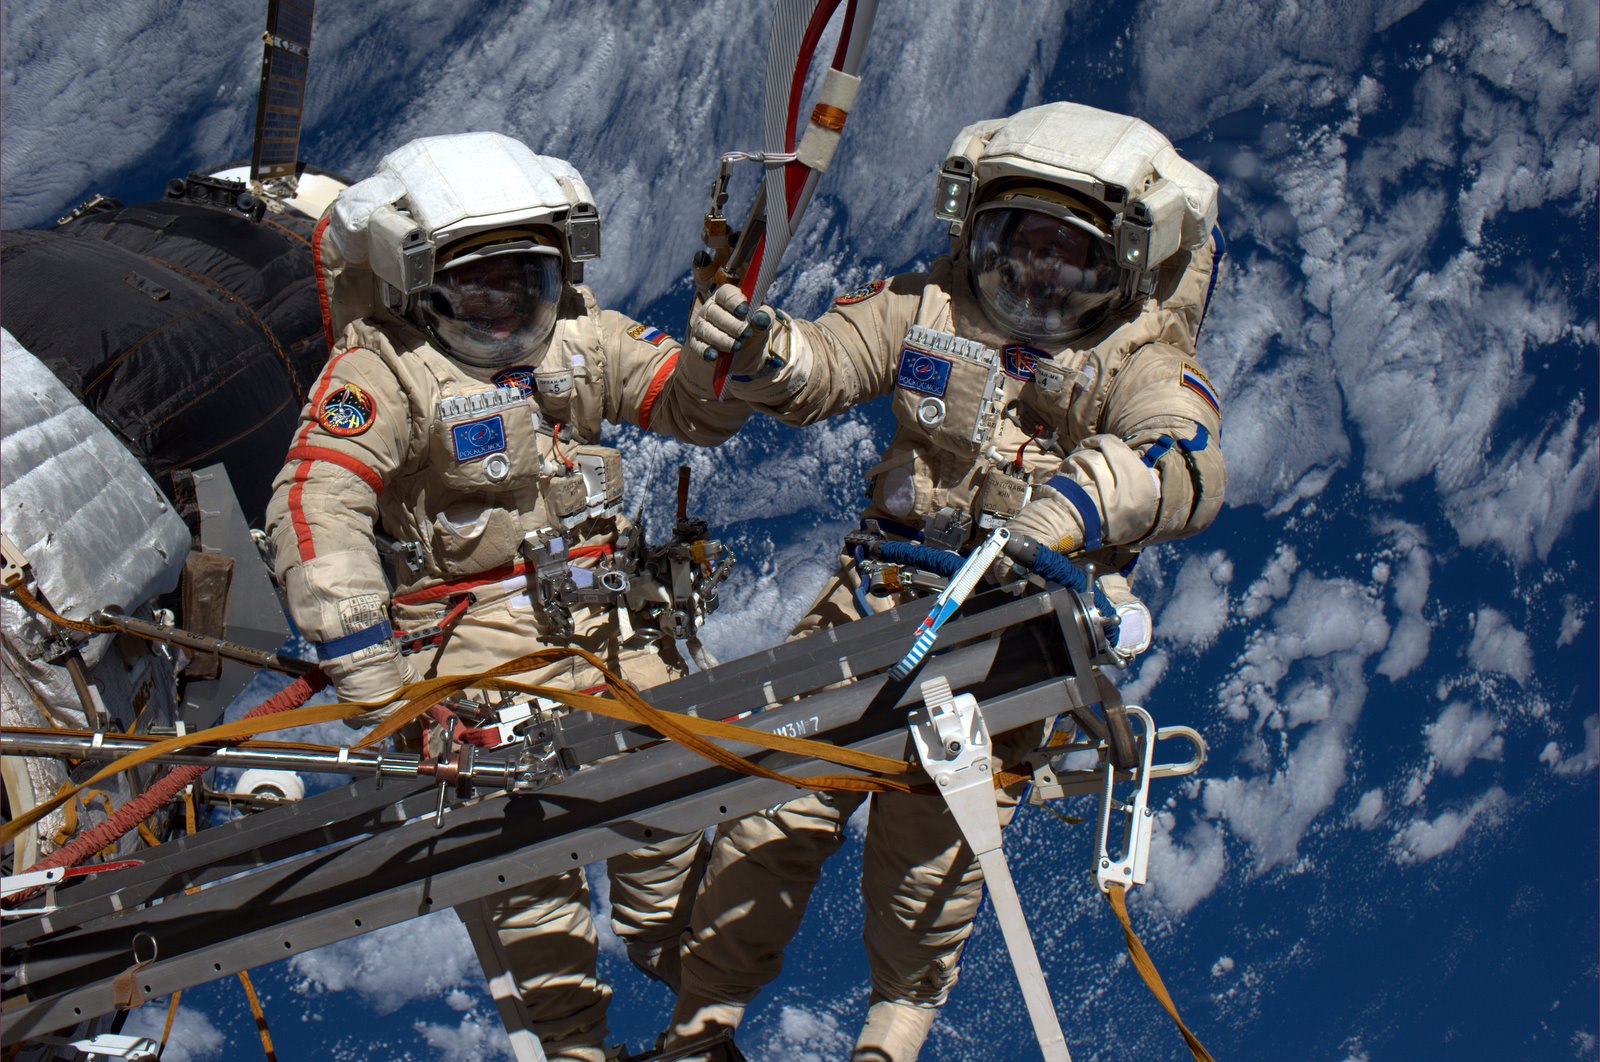 Космонавты Артемьев и Матвеев вышли в открытый космос